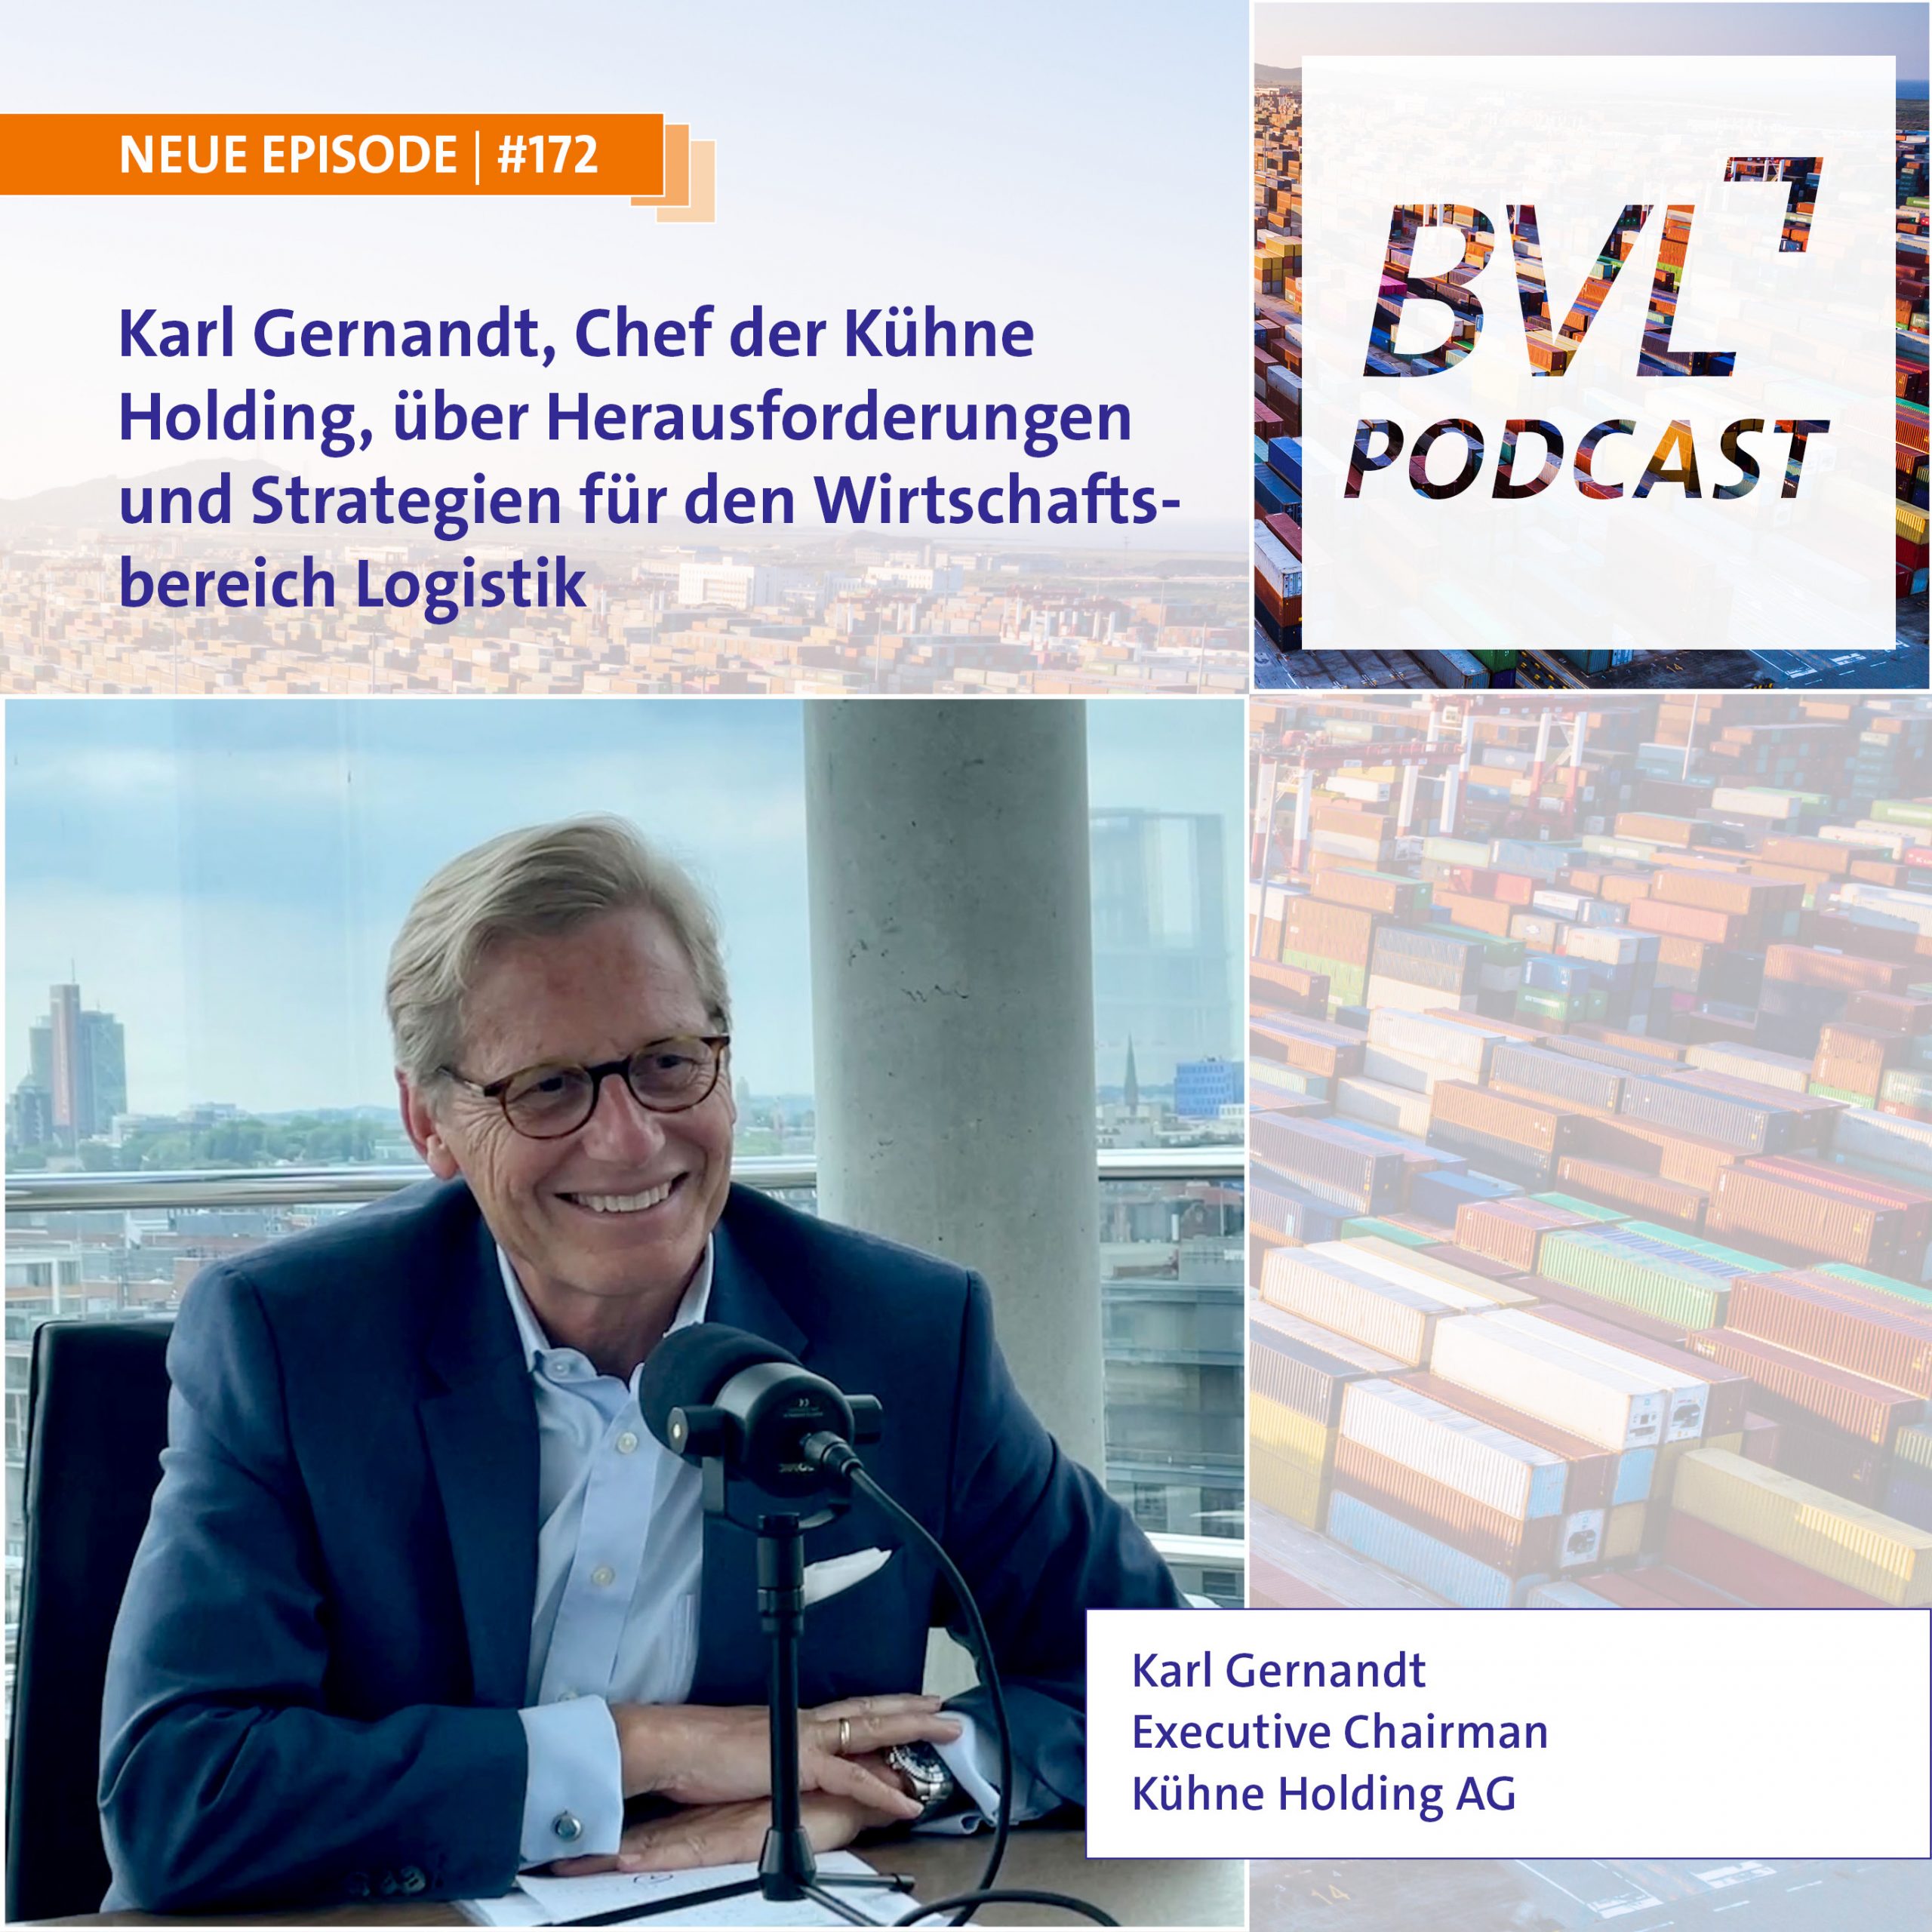 Karl Gernandt, Chef der Kühne Holding, über Herausforderungen und Strategien für den Wirtschaftsbereich Logistik